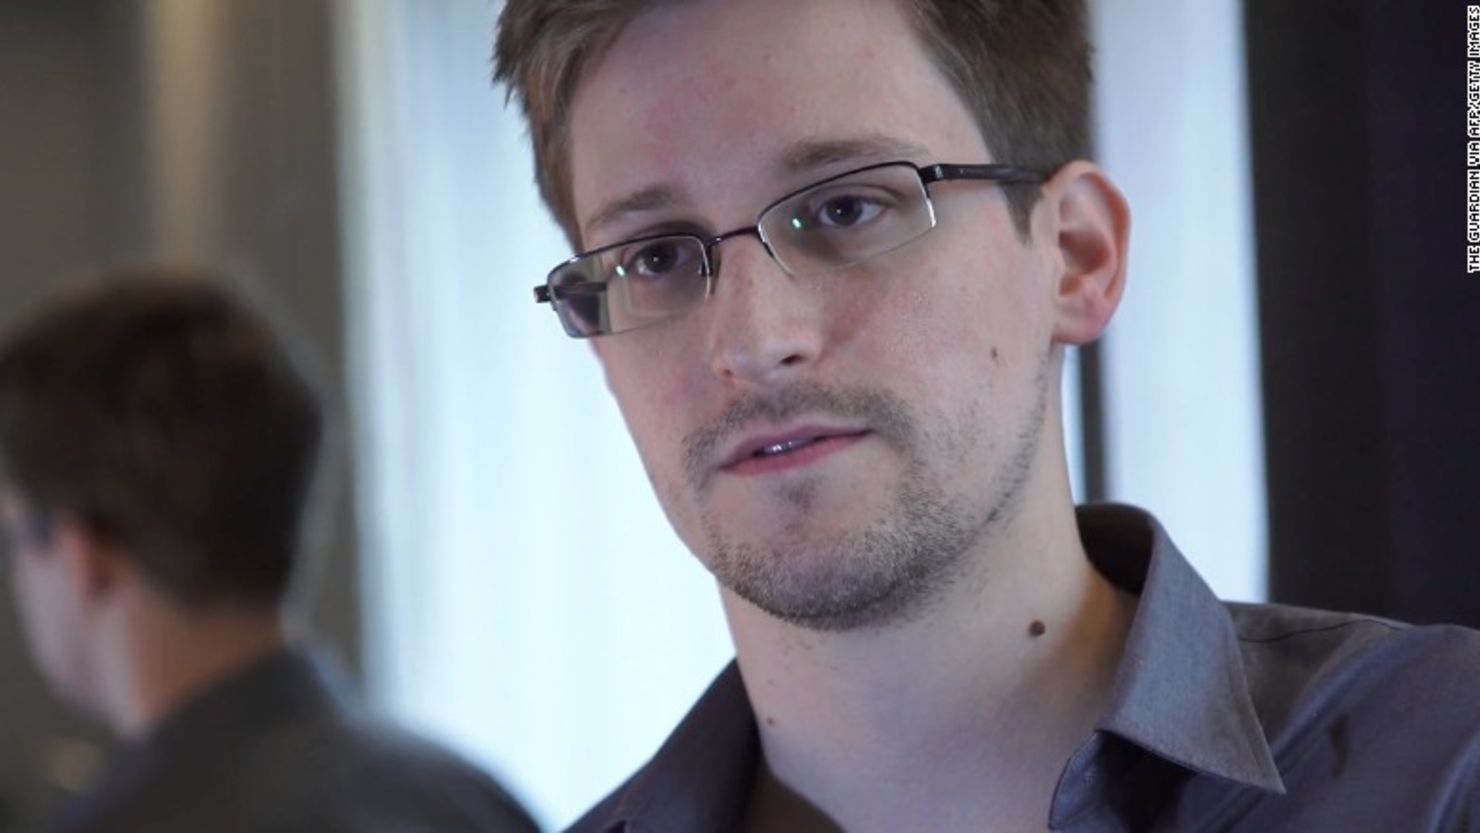 Edward Snowden, excontratista de la CIA, filtró secretos de inteligencia en 2013. Después escribió un libro y dio varias conferencia al respecto.